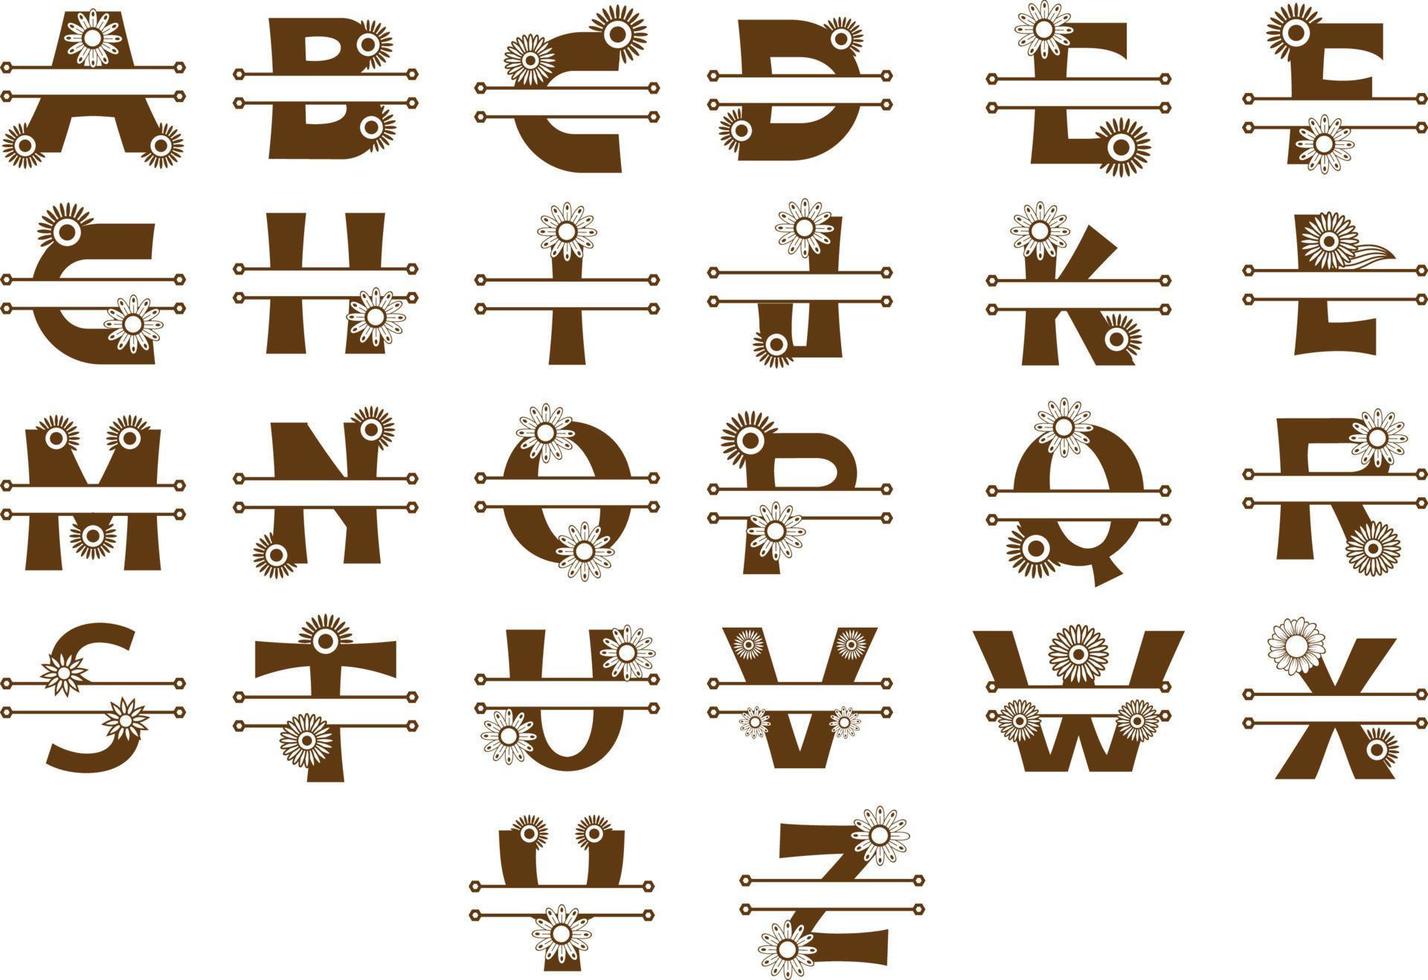 Alphabet-Buchstaben-Monogramm-Design vektor